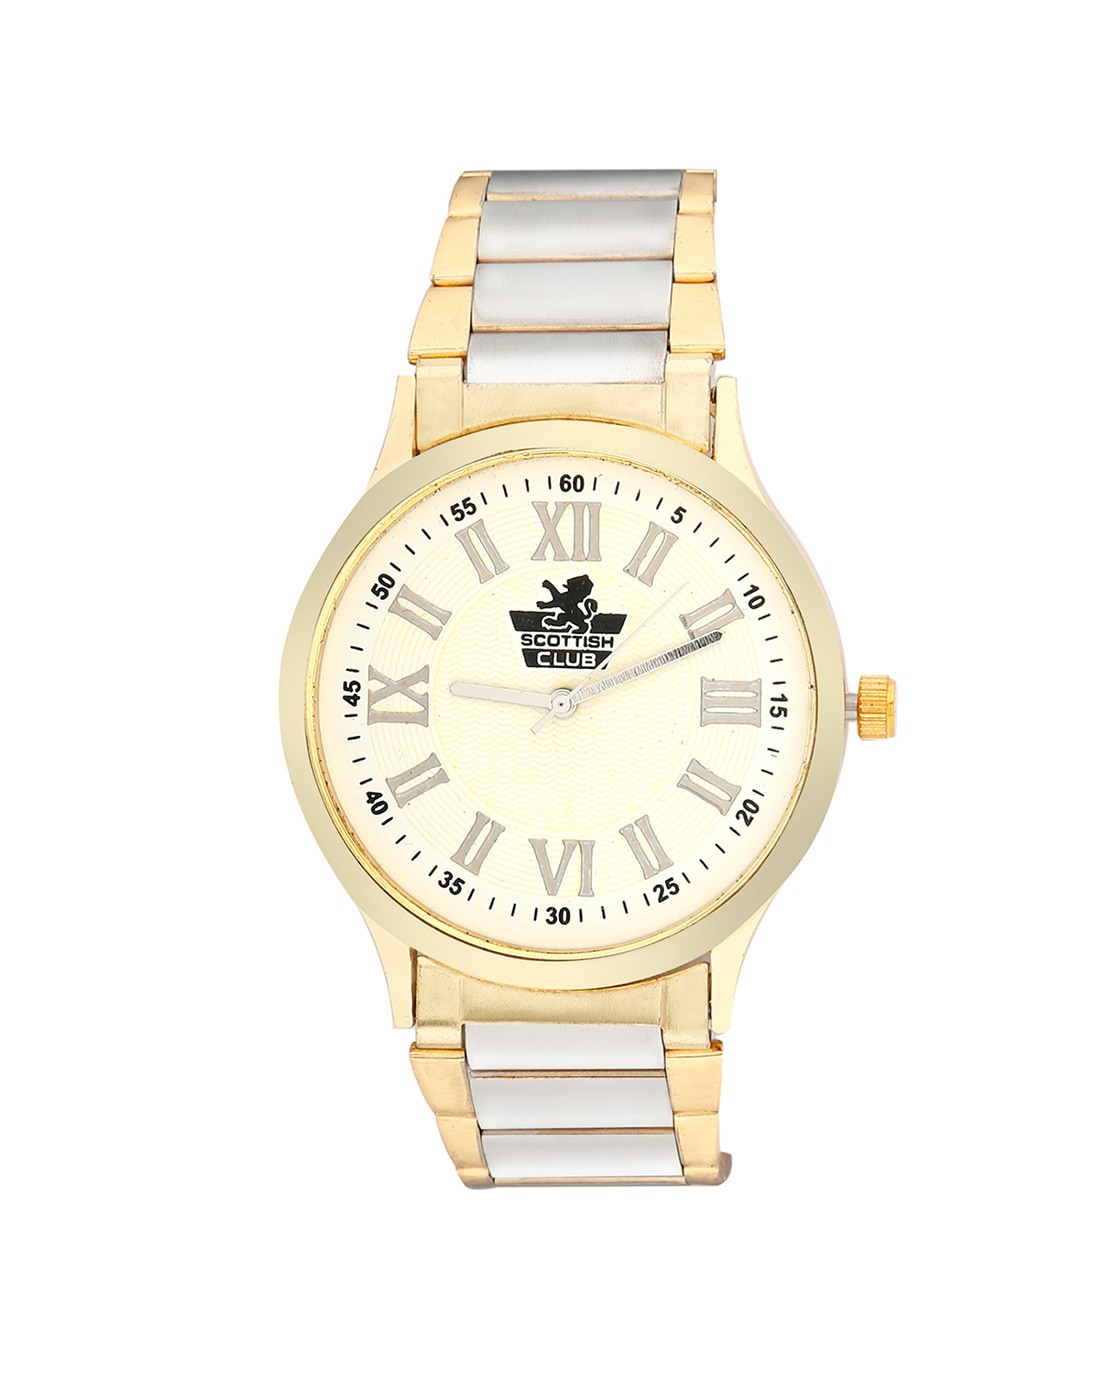 jainx Premium Golden Analog Wrist Watch for Couple - JC441 : Amazon.in:  Fashion